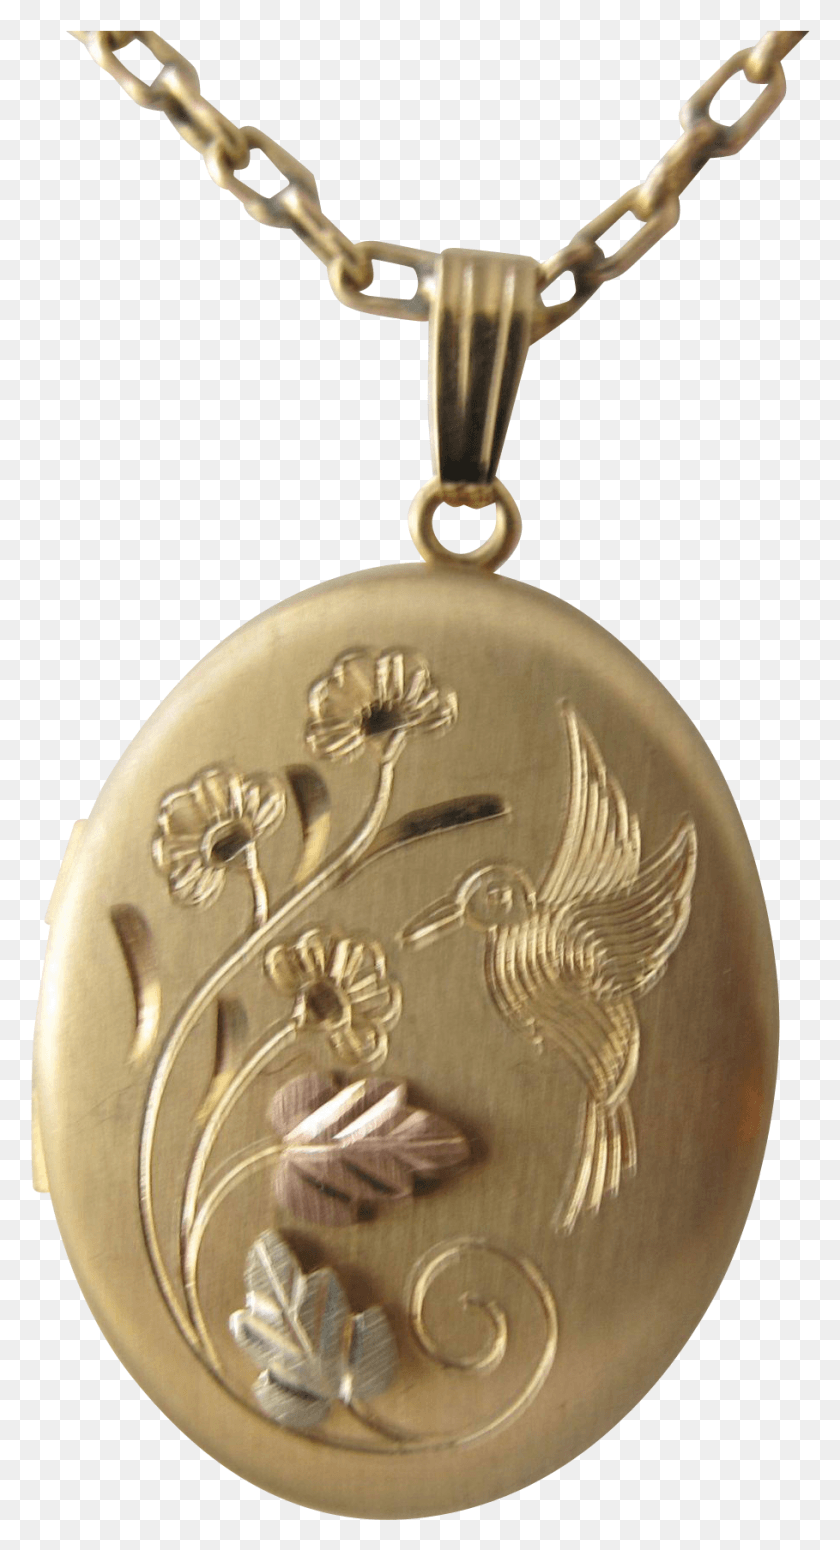 909x1737 Descargar Png / Medallón De Cadena De Oro Vintage En Tricolor Con Cadena Colibrí, Colgante, Accesorios, Accesorio Hd Png